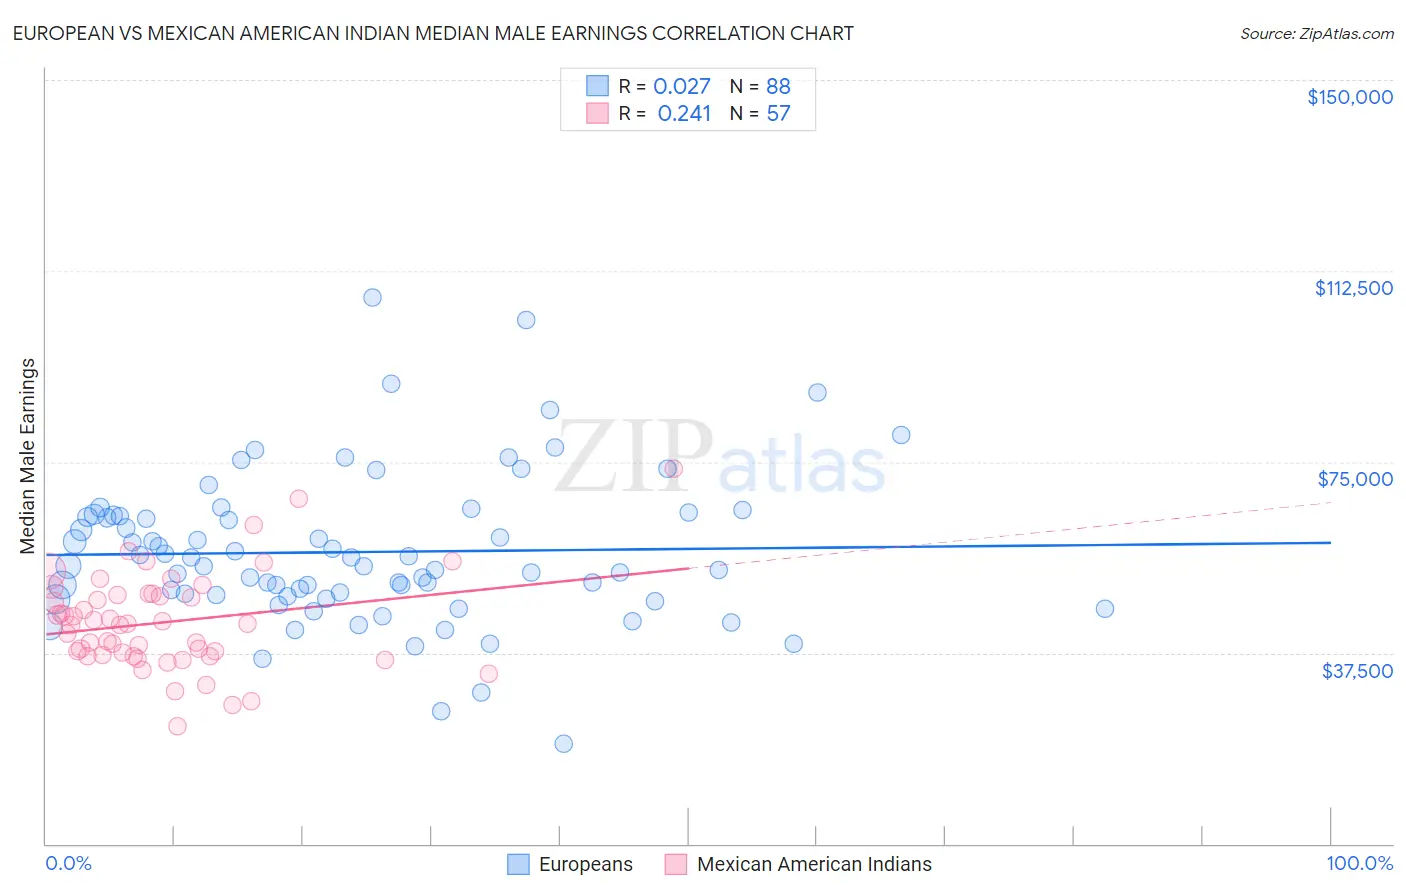 European vs Mexican American Indian Median Male Earnings